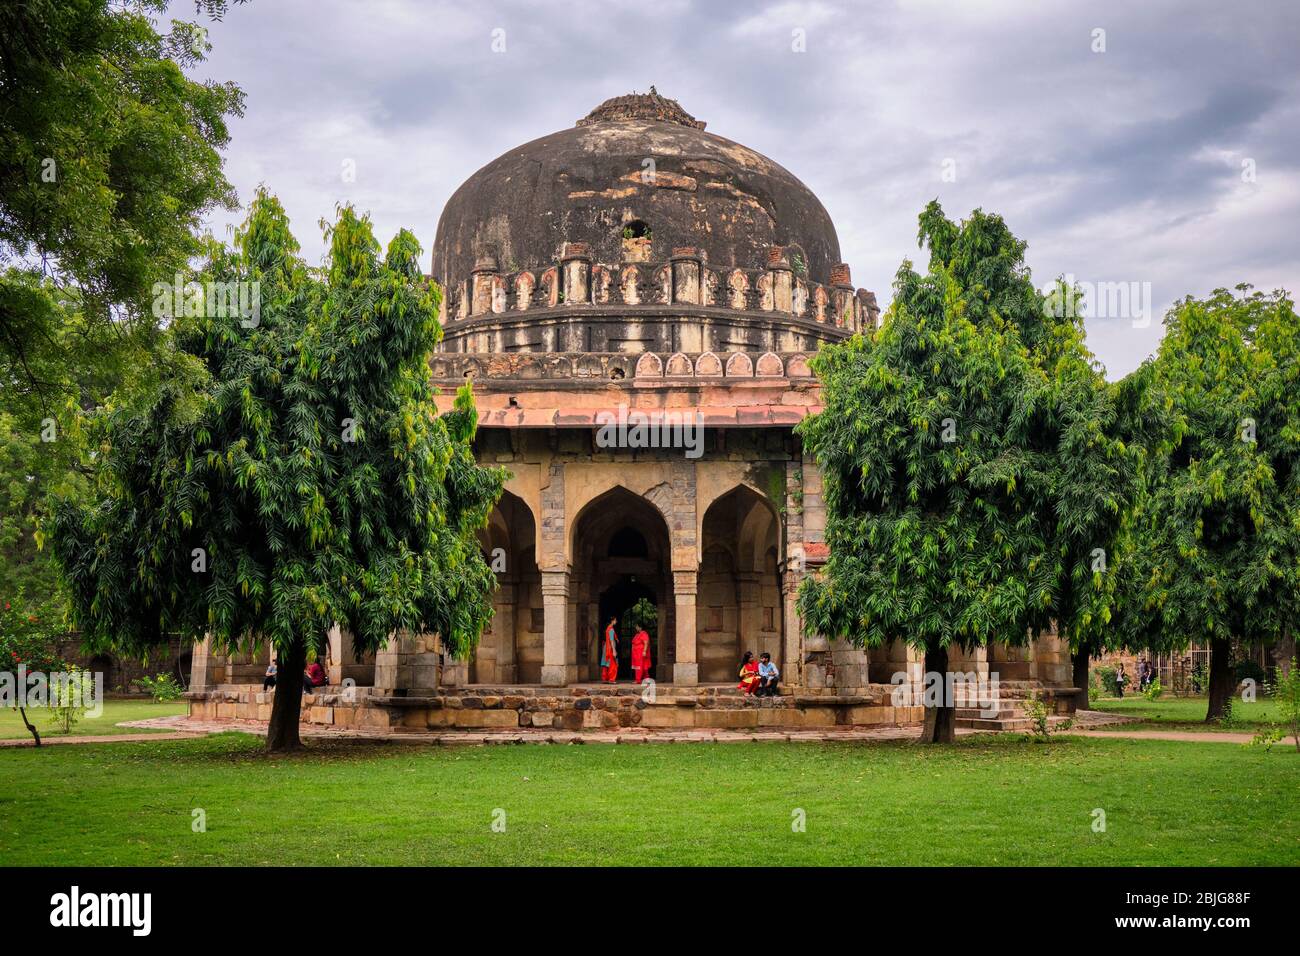 Delhi / India - September 22, 2019: Tomb of Sikandar Lodi, ruler of the Lodi Dynasty, in Lodhi Gardens in New Delhi, India Stock Photo